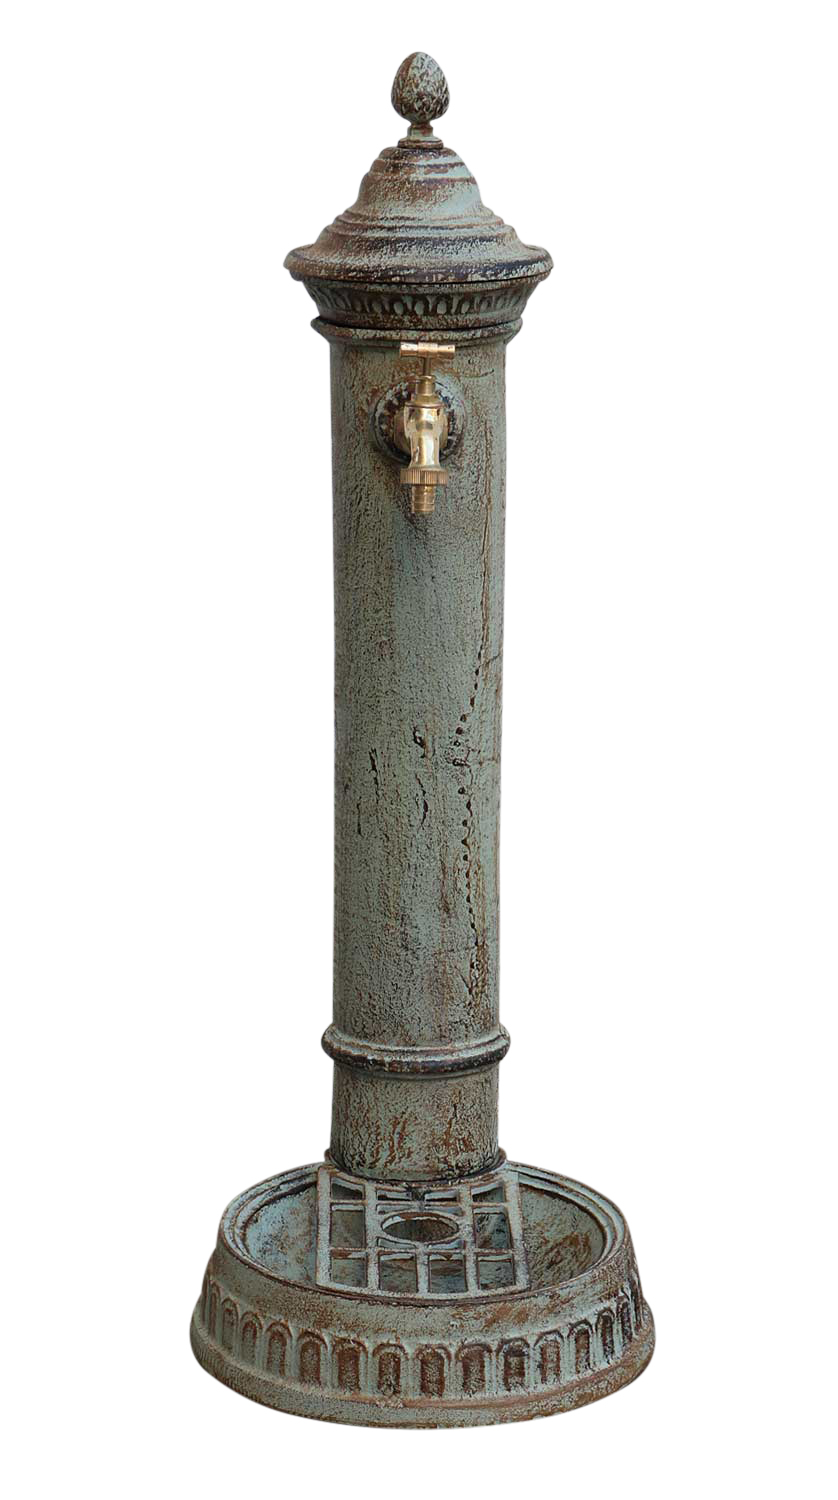 Standbrunnen Wassersäule Gusseisen Gartenbrunnen rustikal Antik Stil H 83cm 